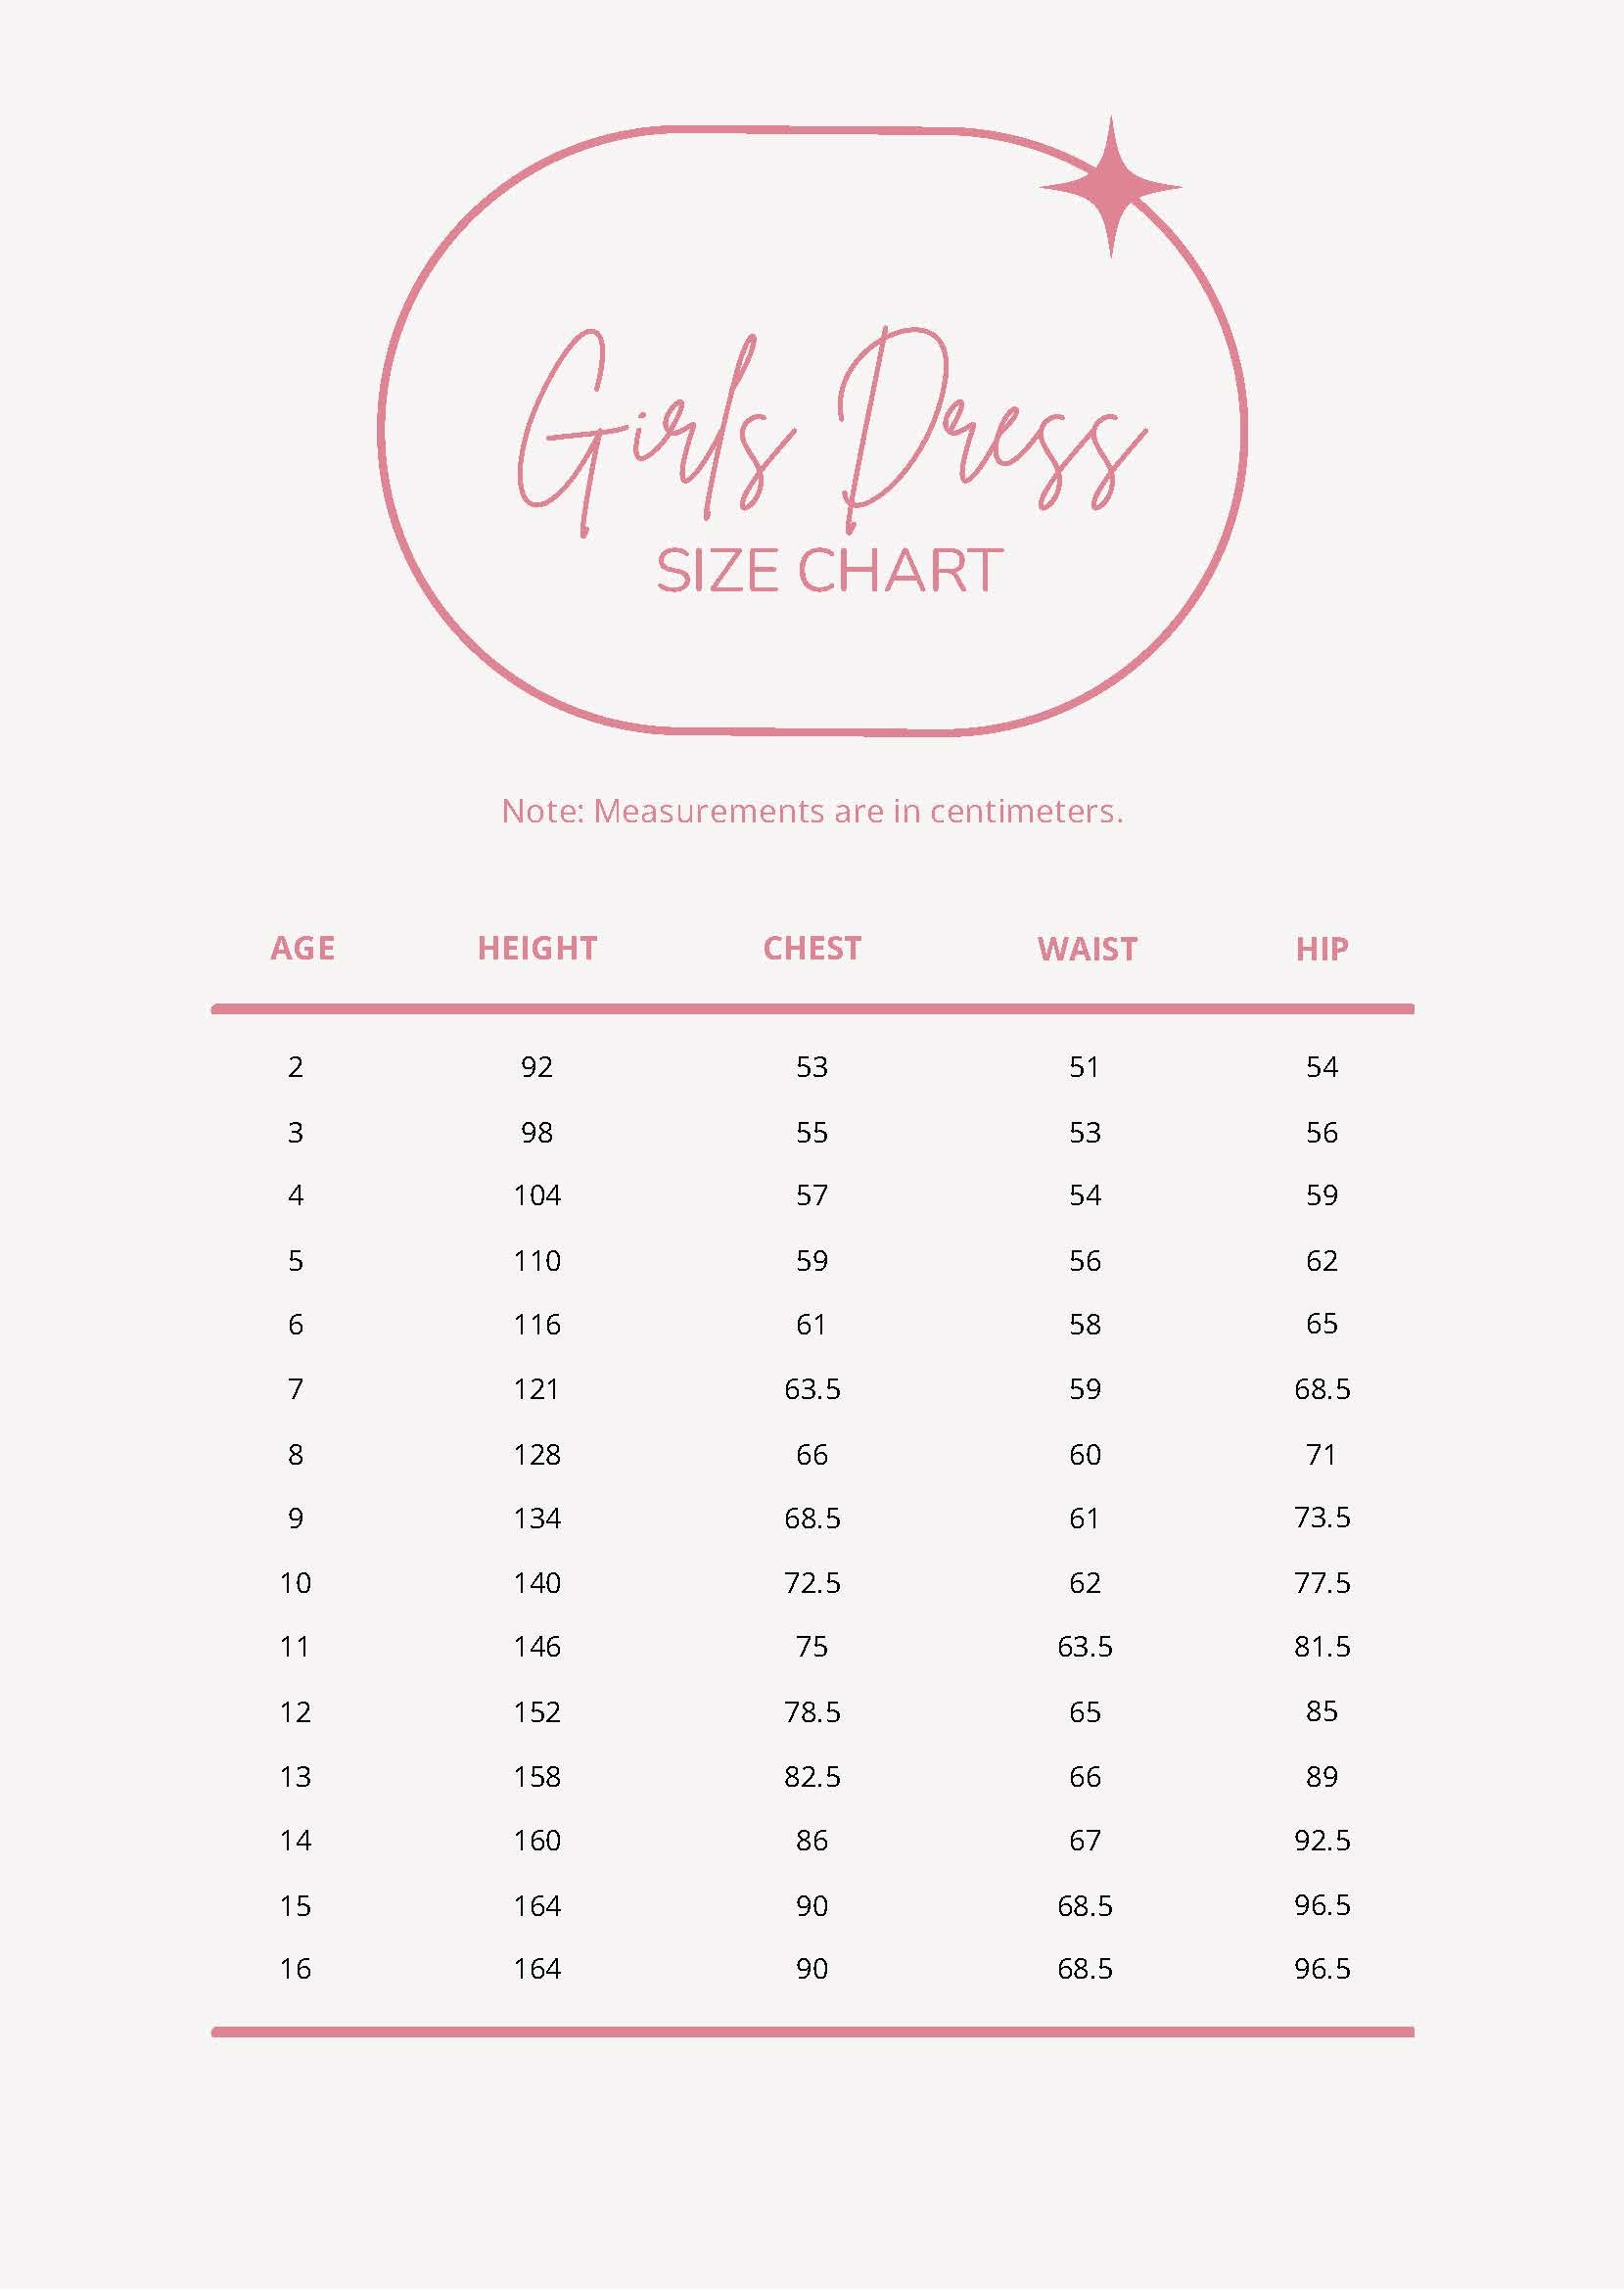 https://images.template.net/100259/girls-dress-size-chart-5kdpx.jpg